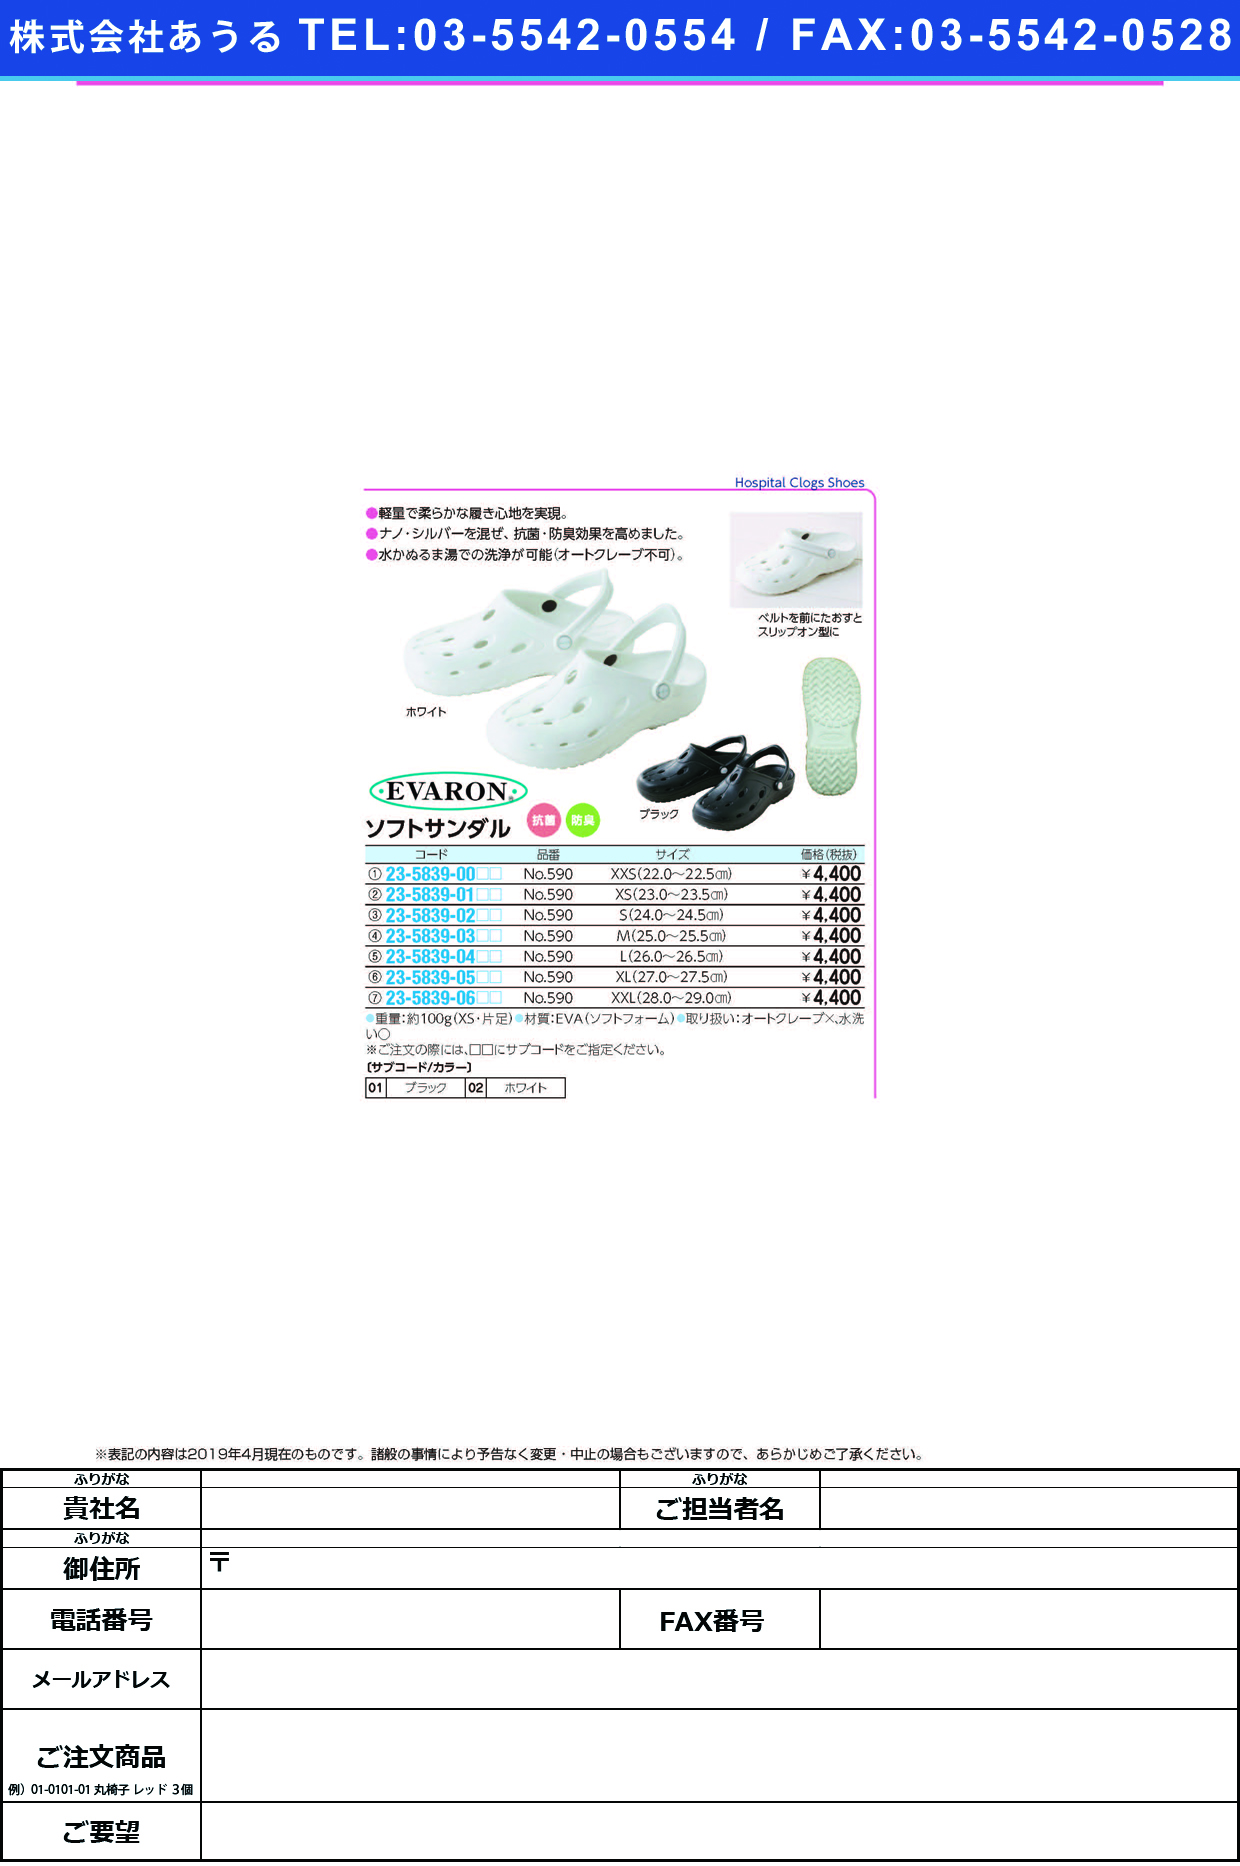 (23-5839-04)ソフトサンダル NO.590(L/26-26.5CM) ｿﾌﾄｻﾝﾀﾞﾙ ブラック【1足単位】【2019年カタログ商品】